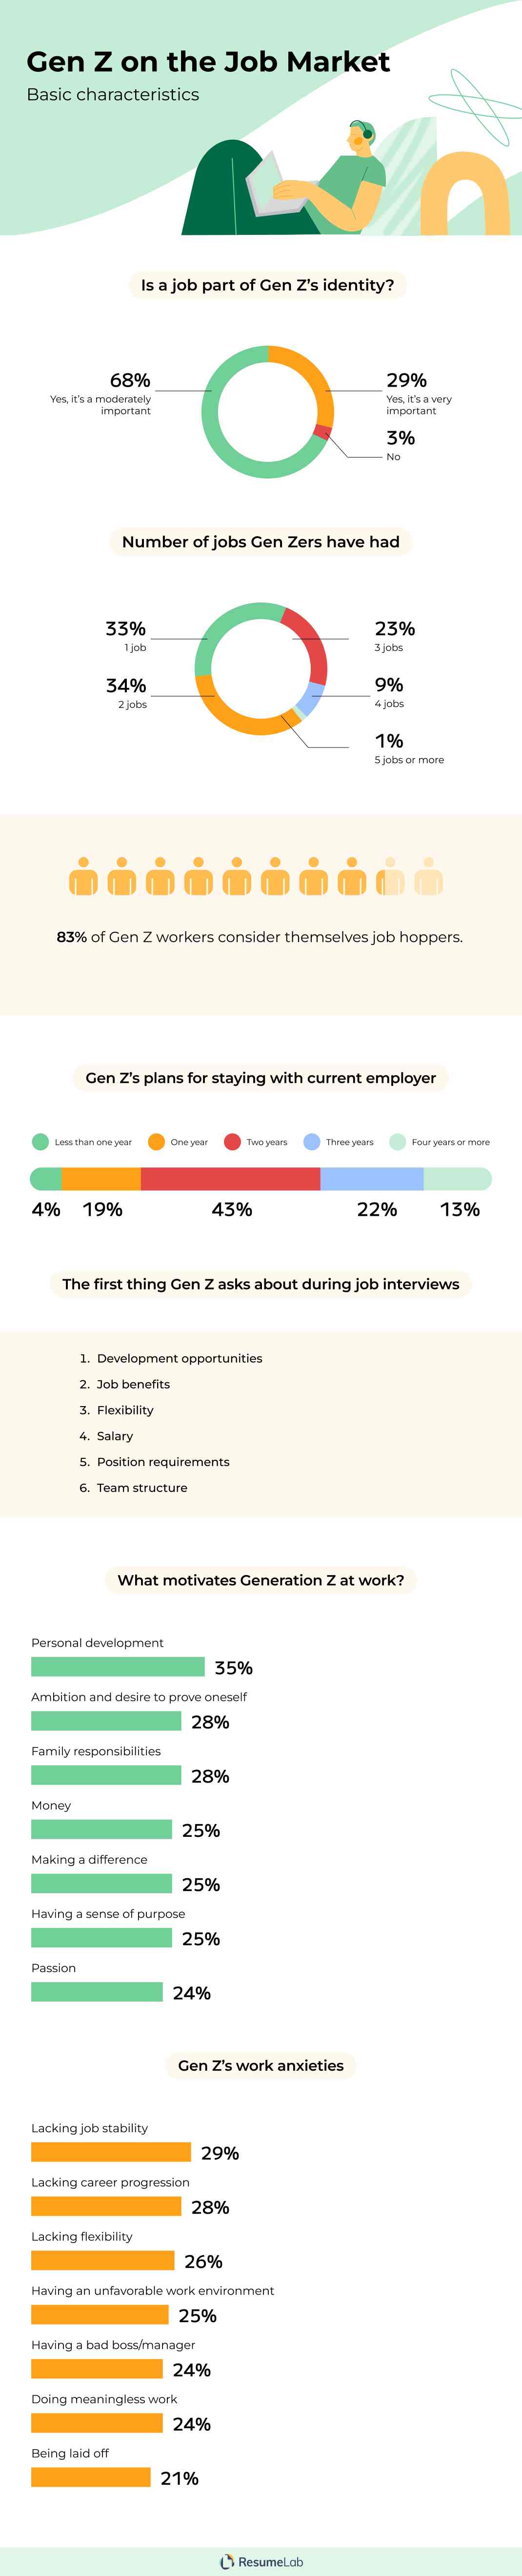 Gen Z on the job market